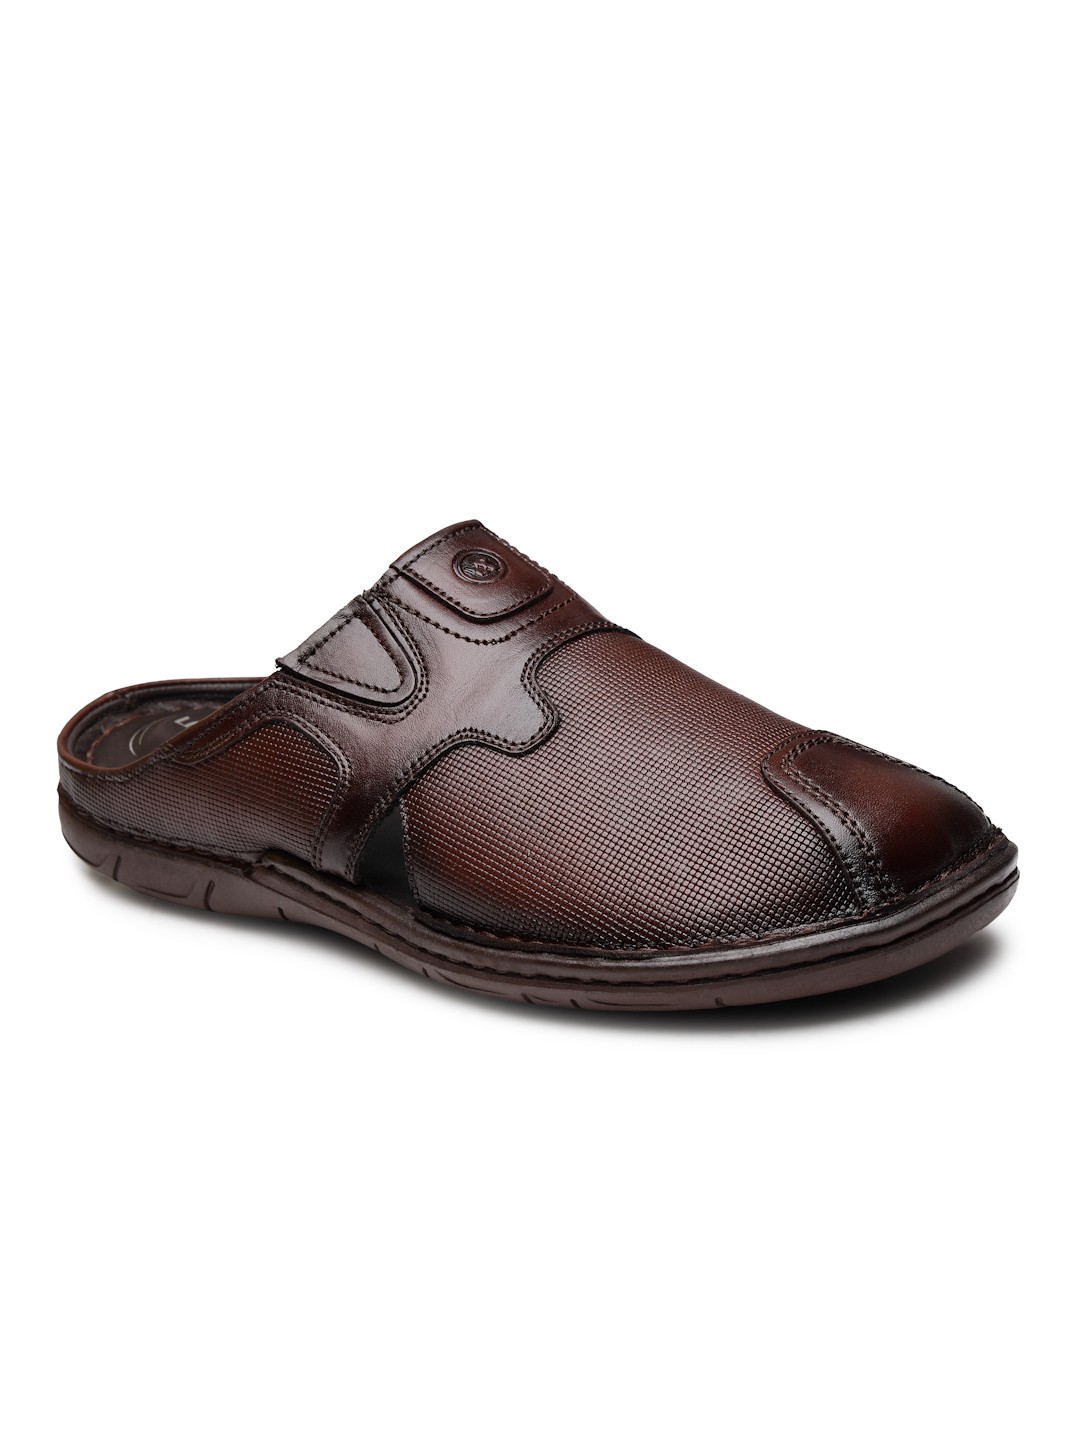 Buy Von Wellx Germany Comfort Men's Brown Slippers Arlo Online in Bhubaneswar